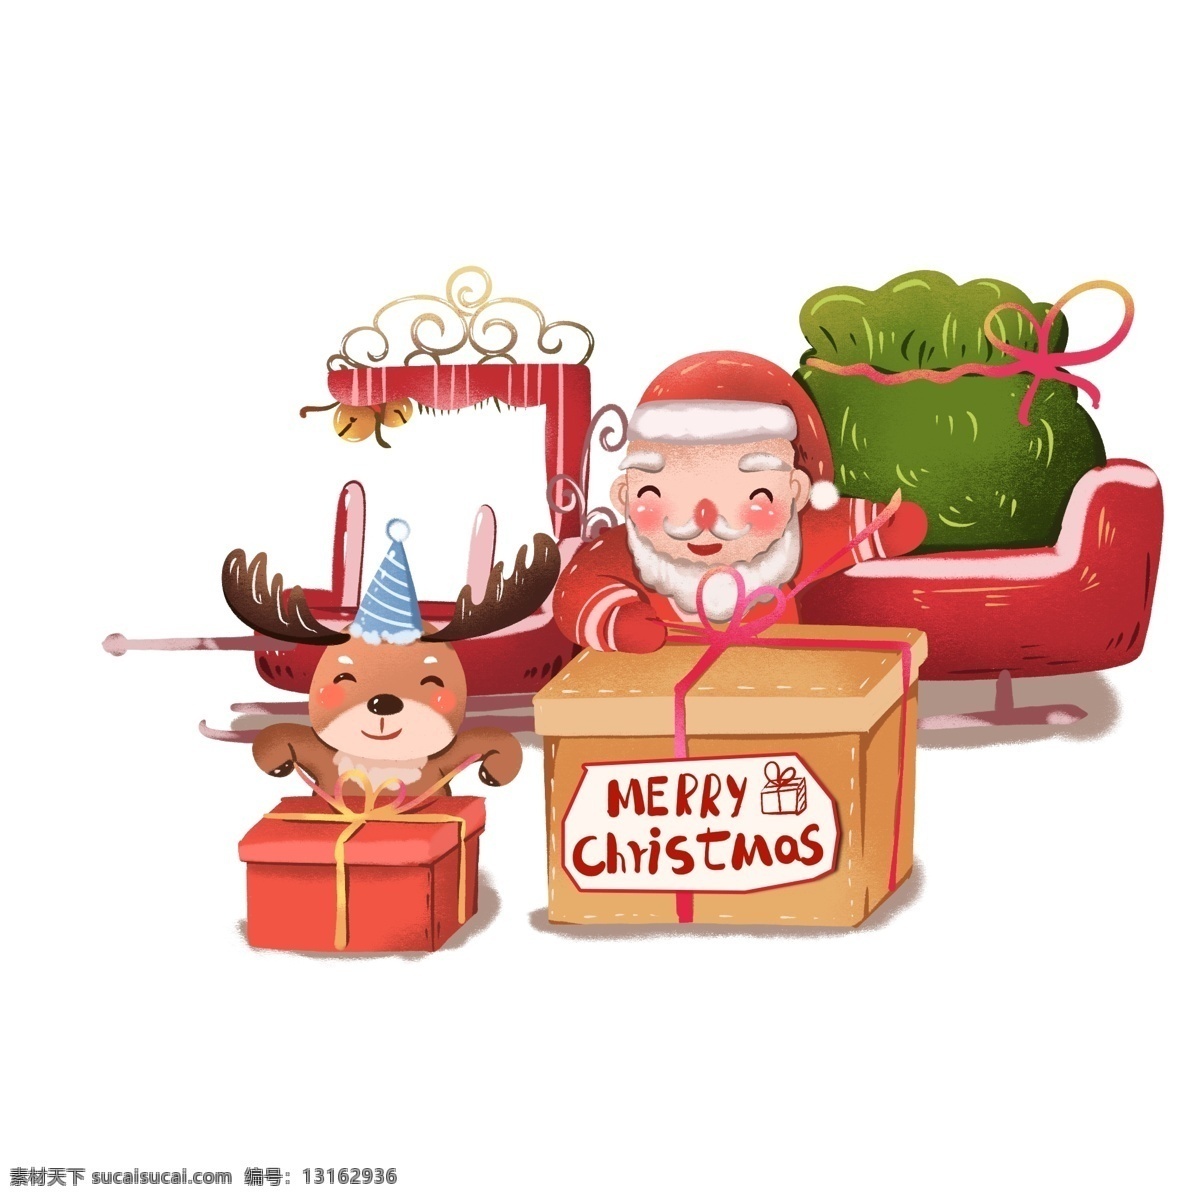 圣诞节 圣诞老人 礼盒 创意 配 图 送礼 打包 驯鹿 创意配图